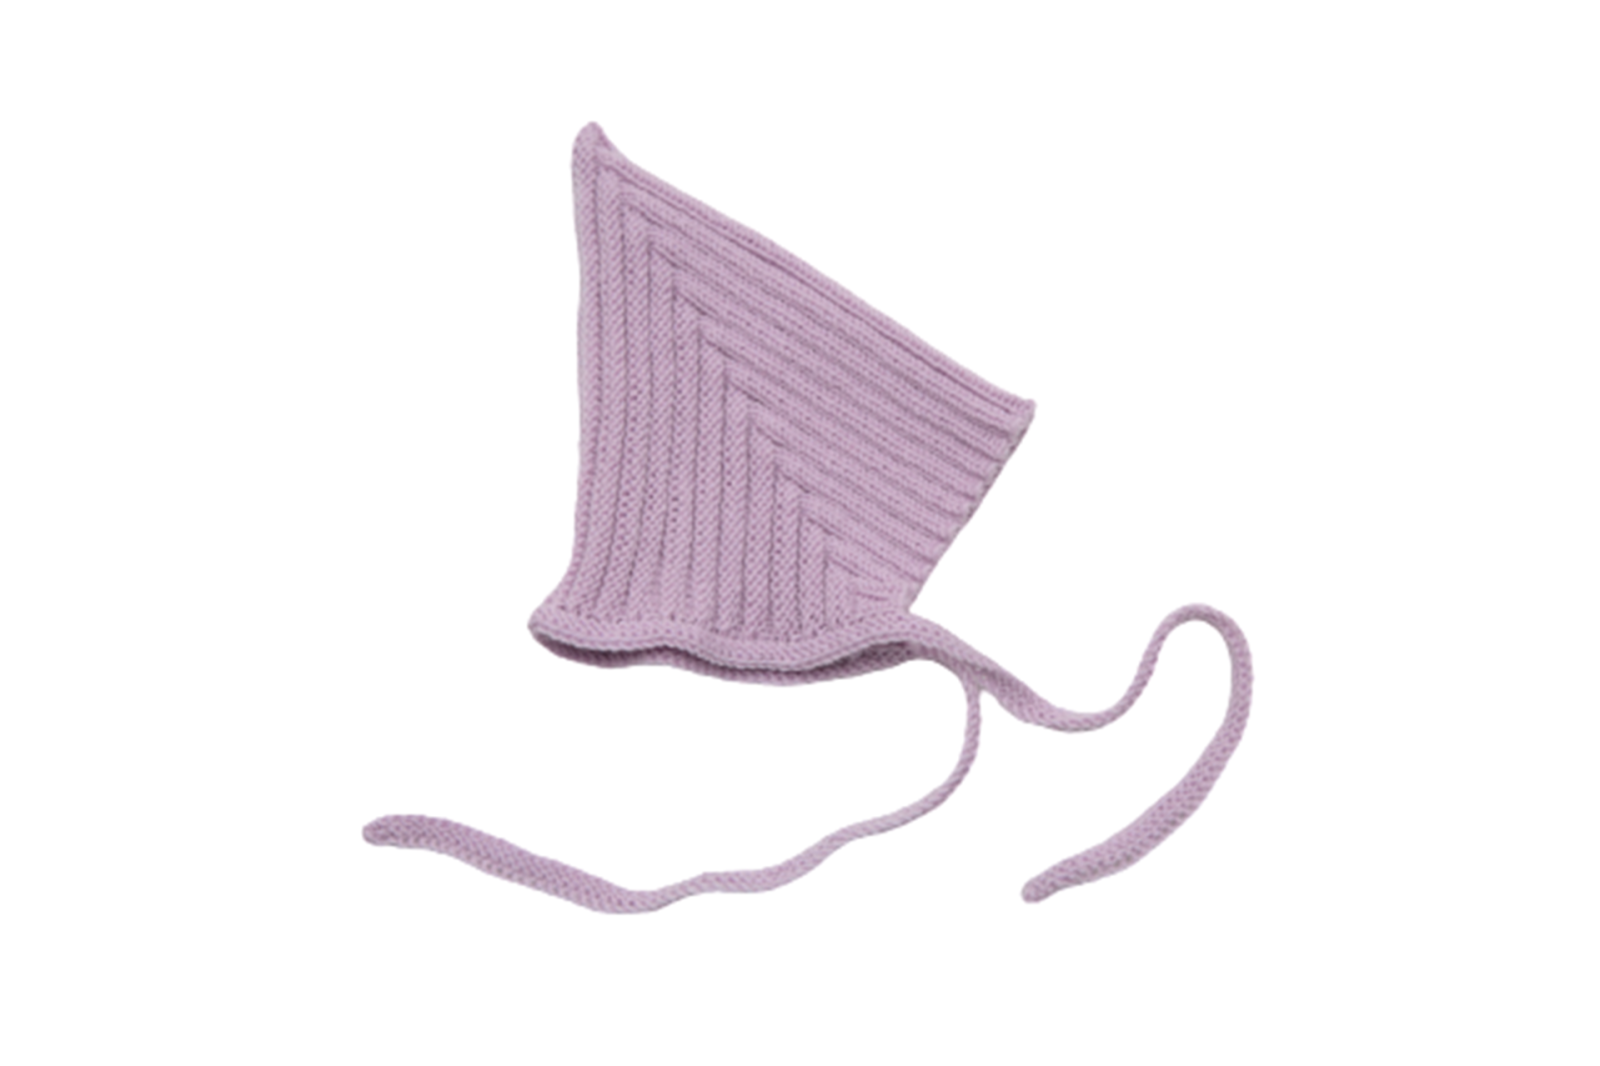 Babymütze Zwergenmütze Pixie-Mütze handgestrickt aus 100 Schurwolle Merino - Größe und